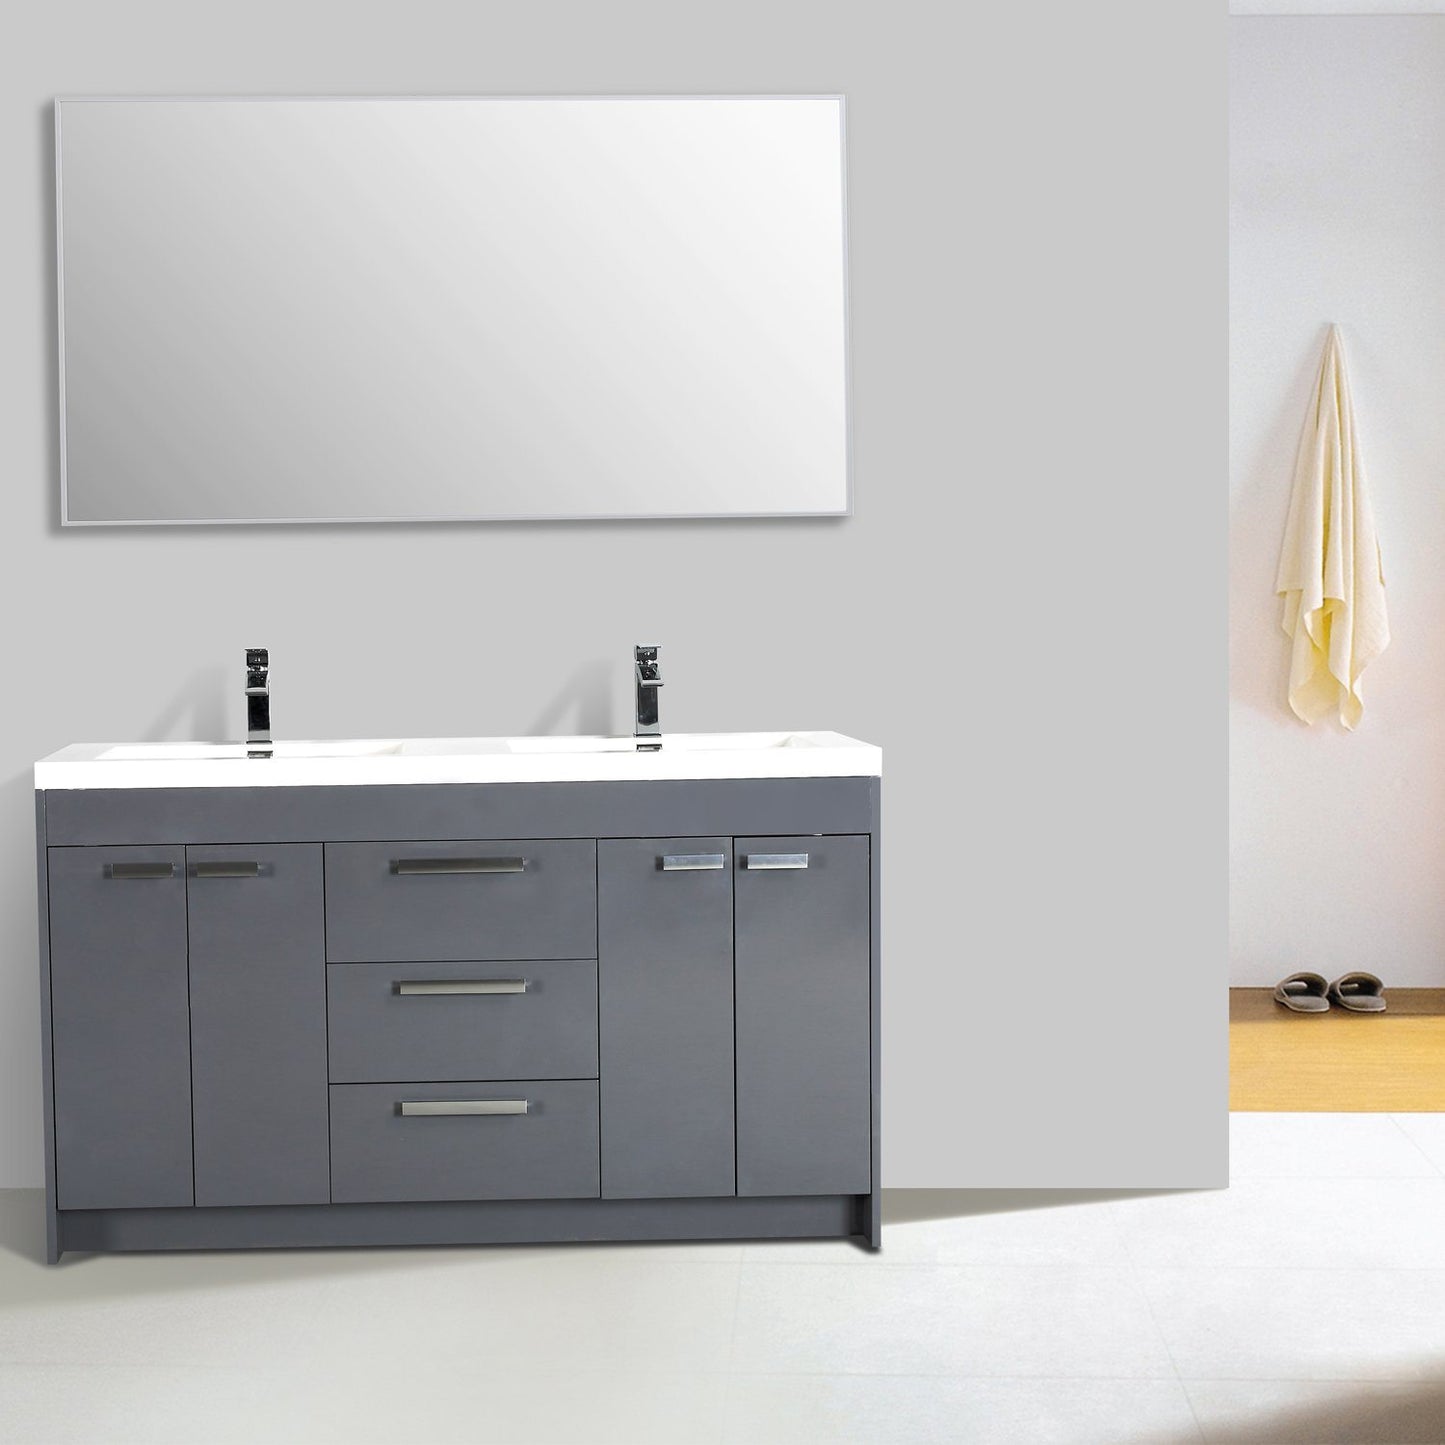 Eviva Lugano 60" Modern Bathroom Vanity with White Integrated Acrylic Double Sink - Luxe Bathroom Vanities Luxury Bathroom Fixtures Bathroom Furniture